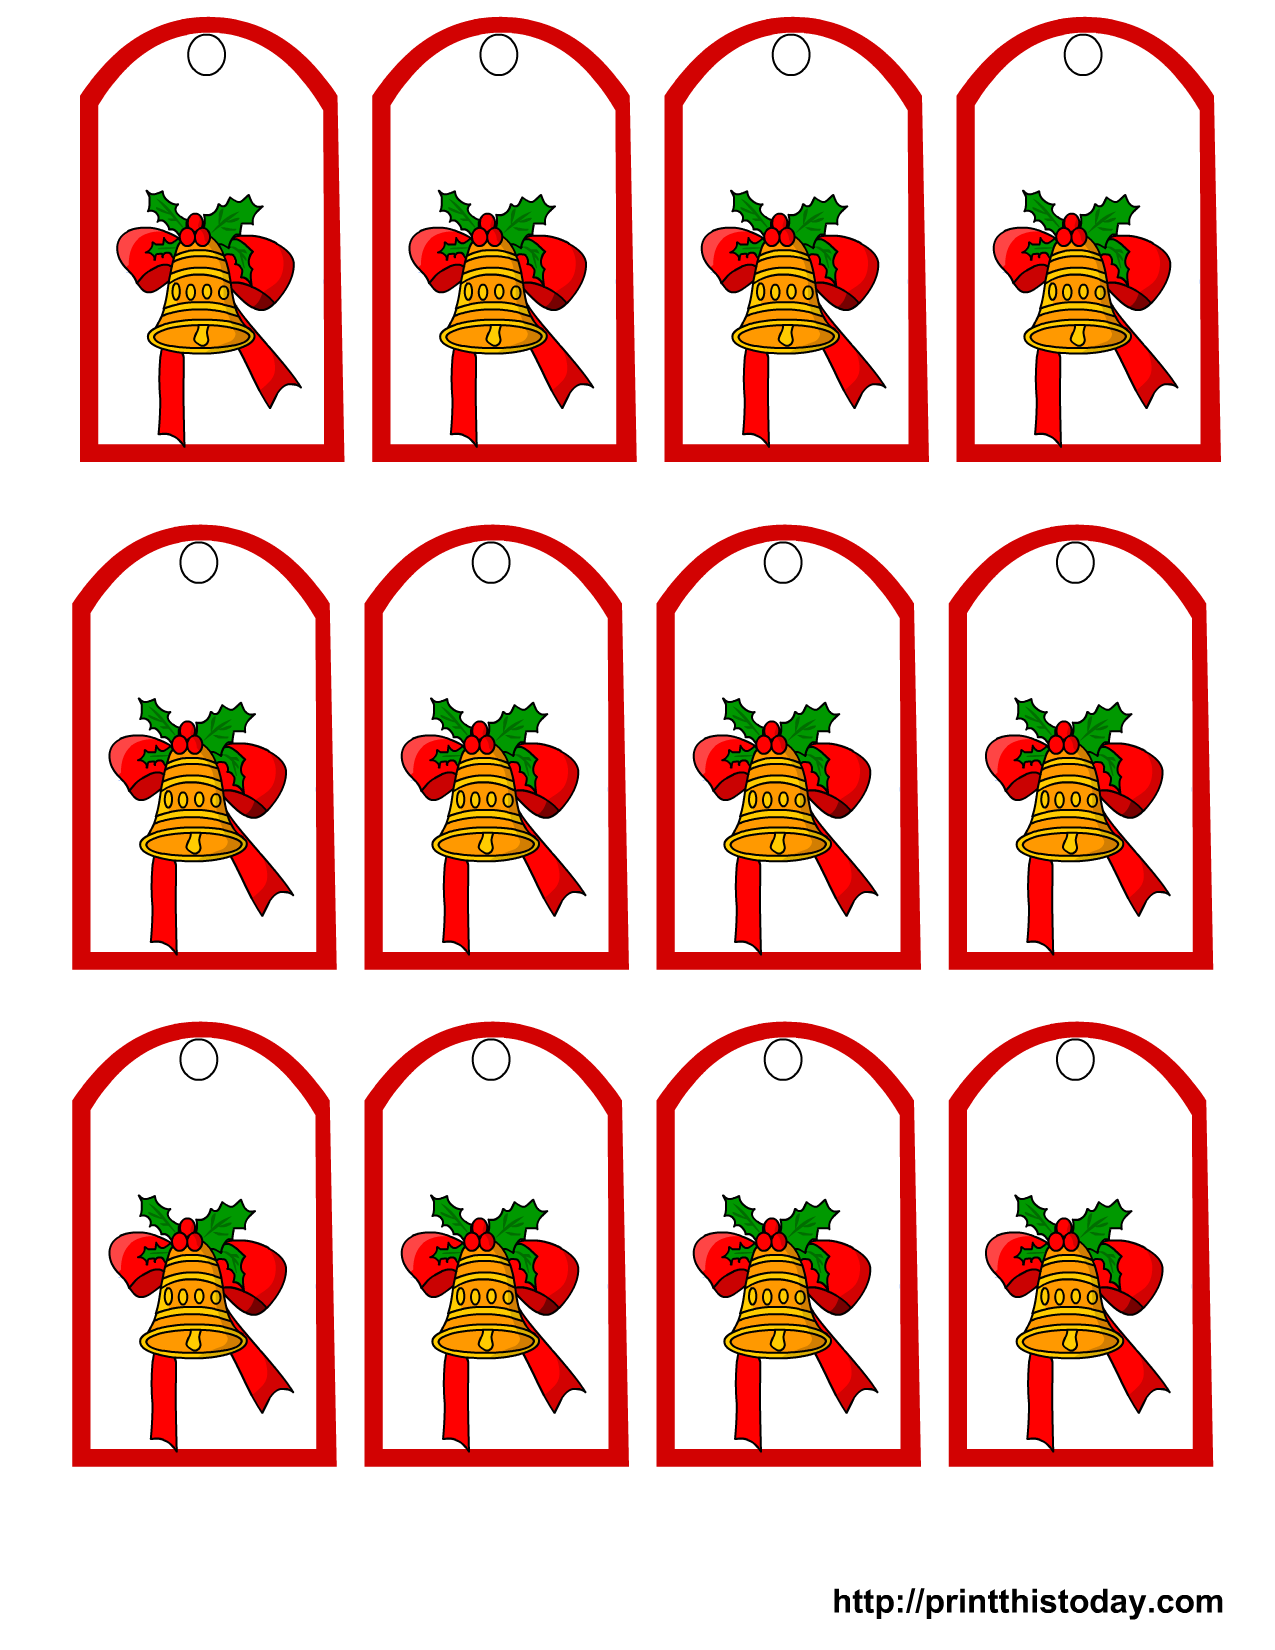 free-printable-christmas-gift-tags-13-designs-just-print-and-use